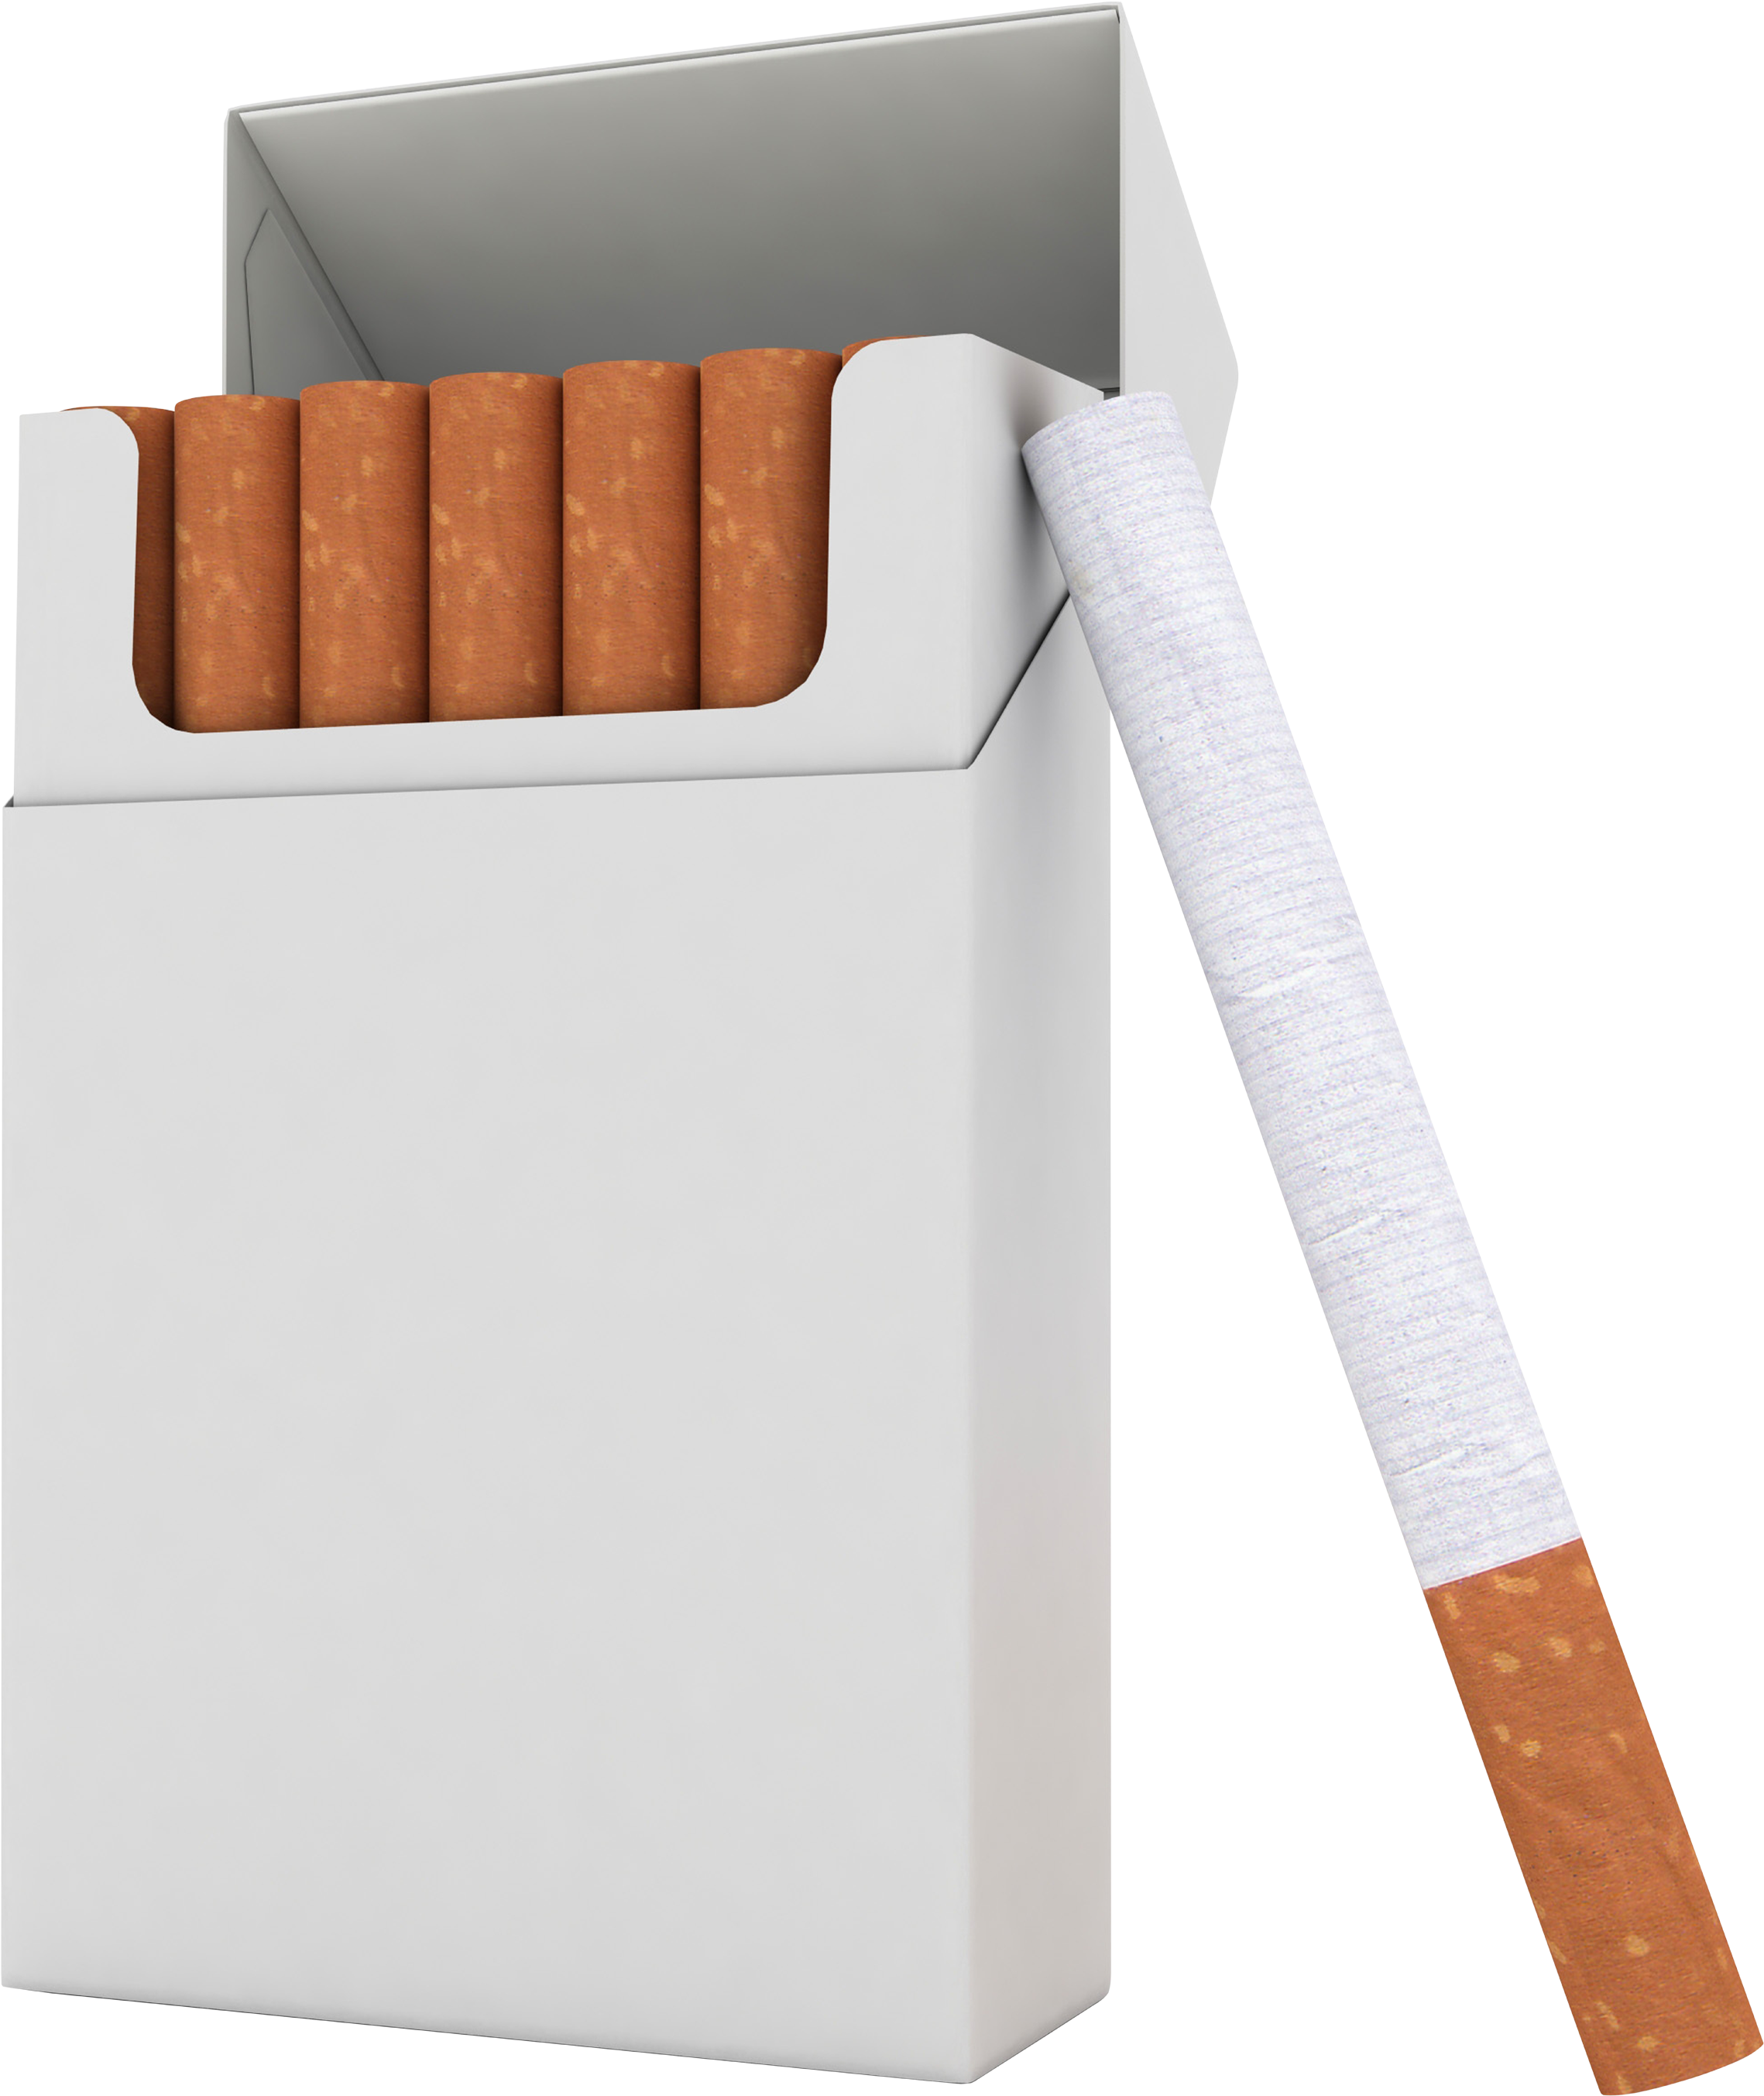 Marlboro Cigarettes, Filter, 